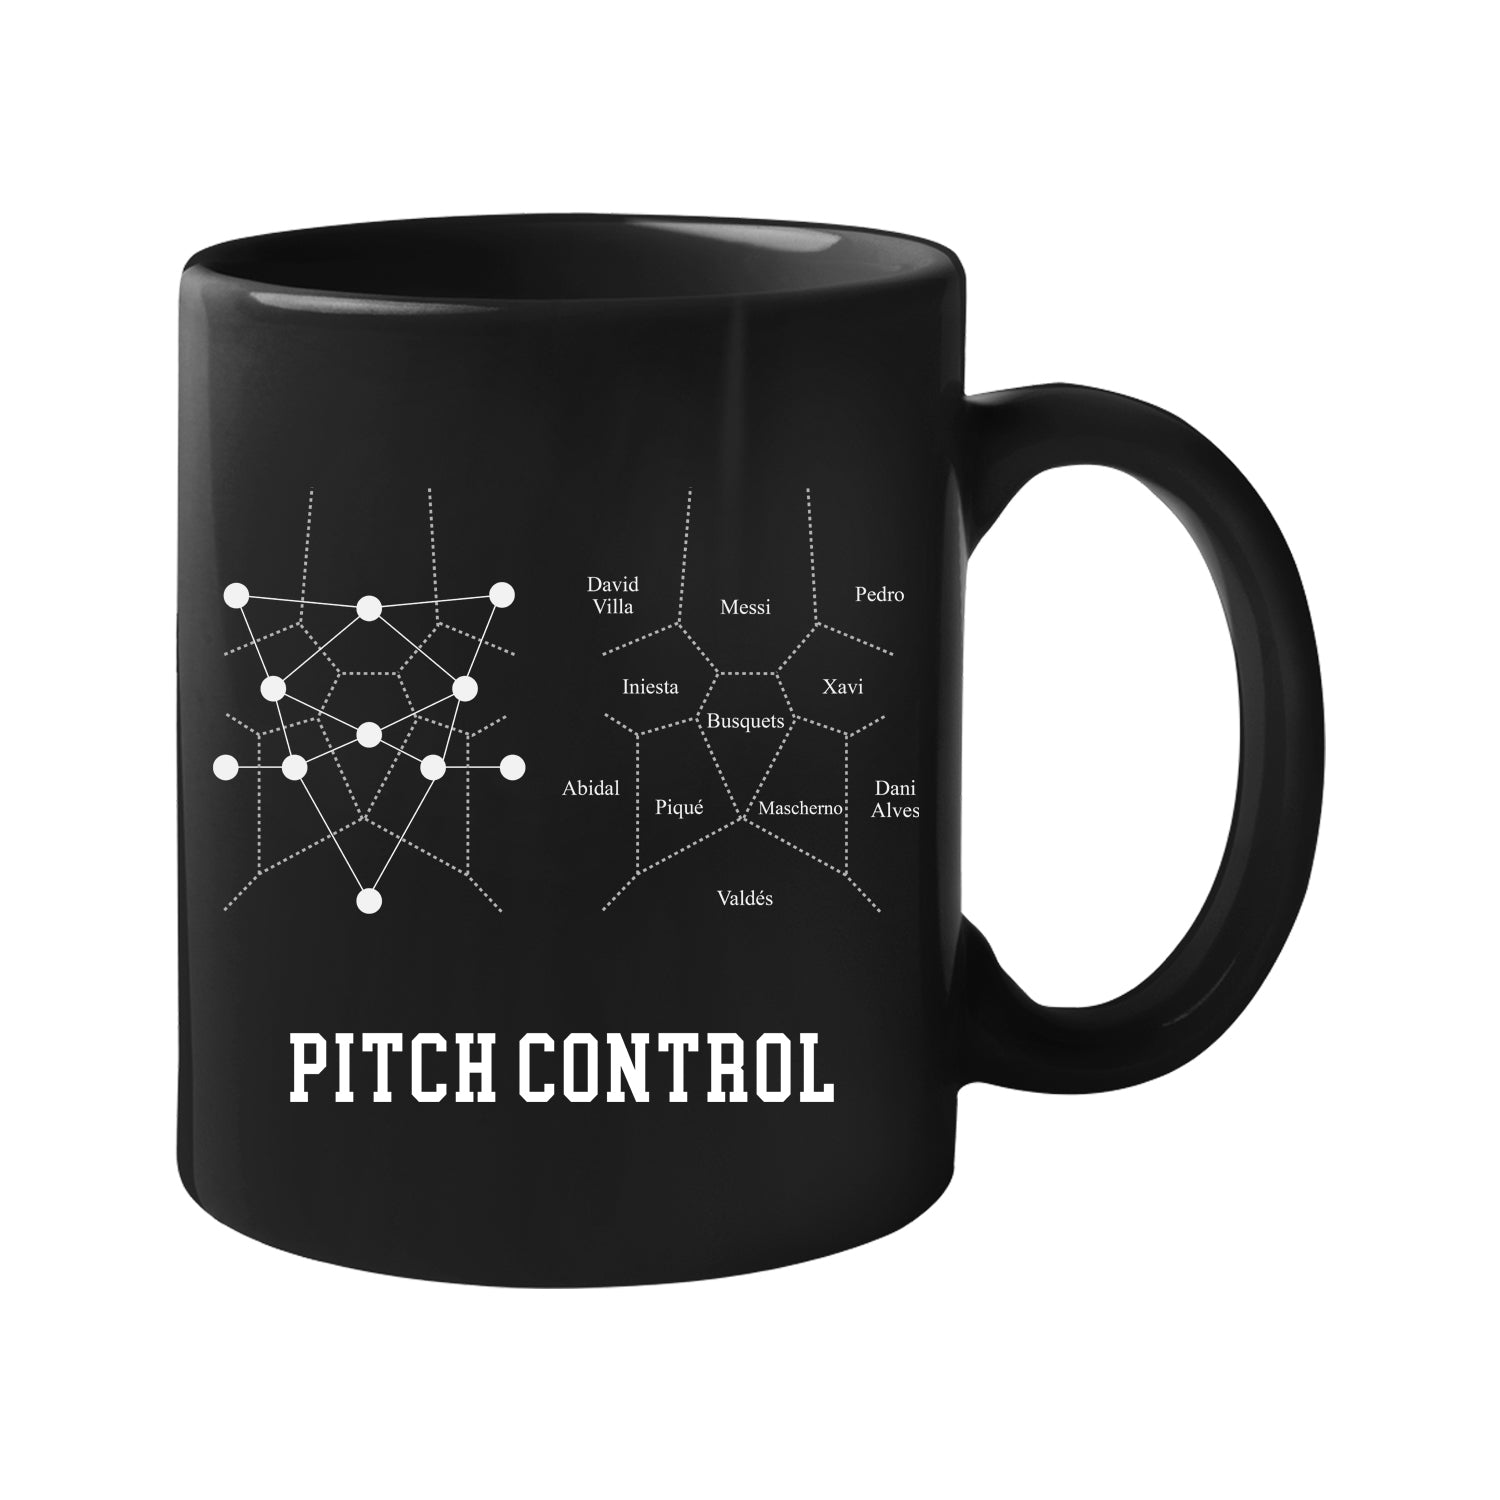 Pitch Control - Soccermatics - Mug 11 oz